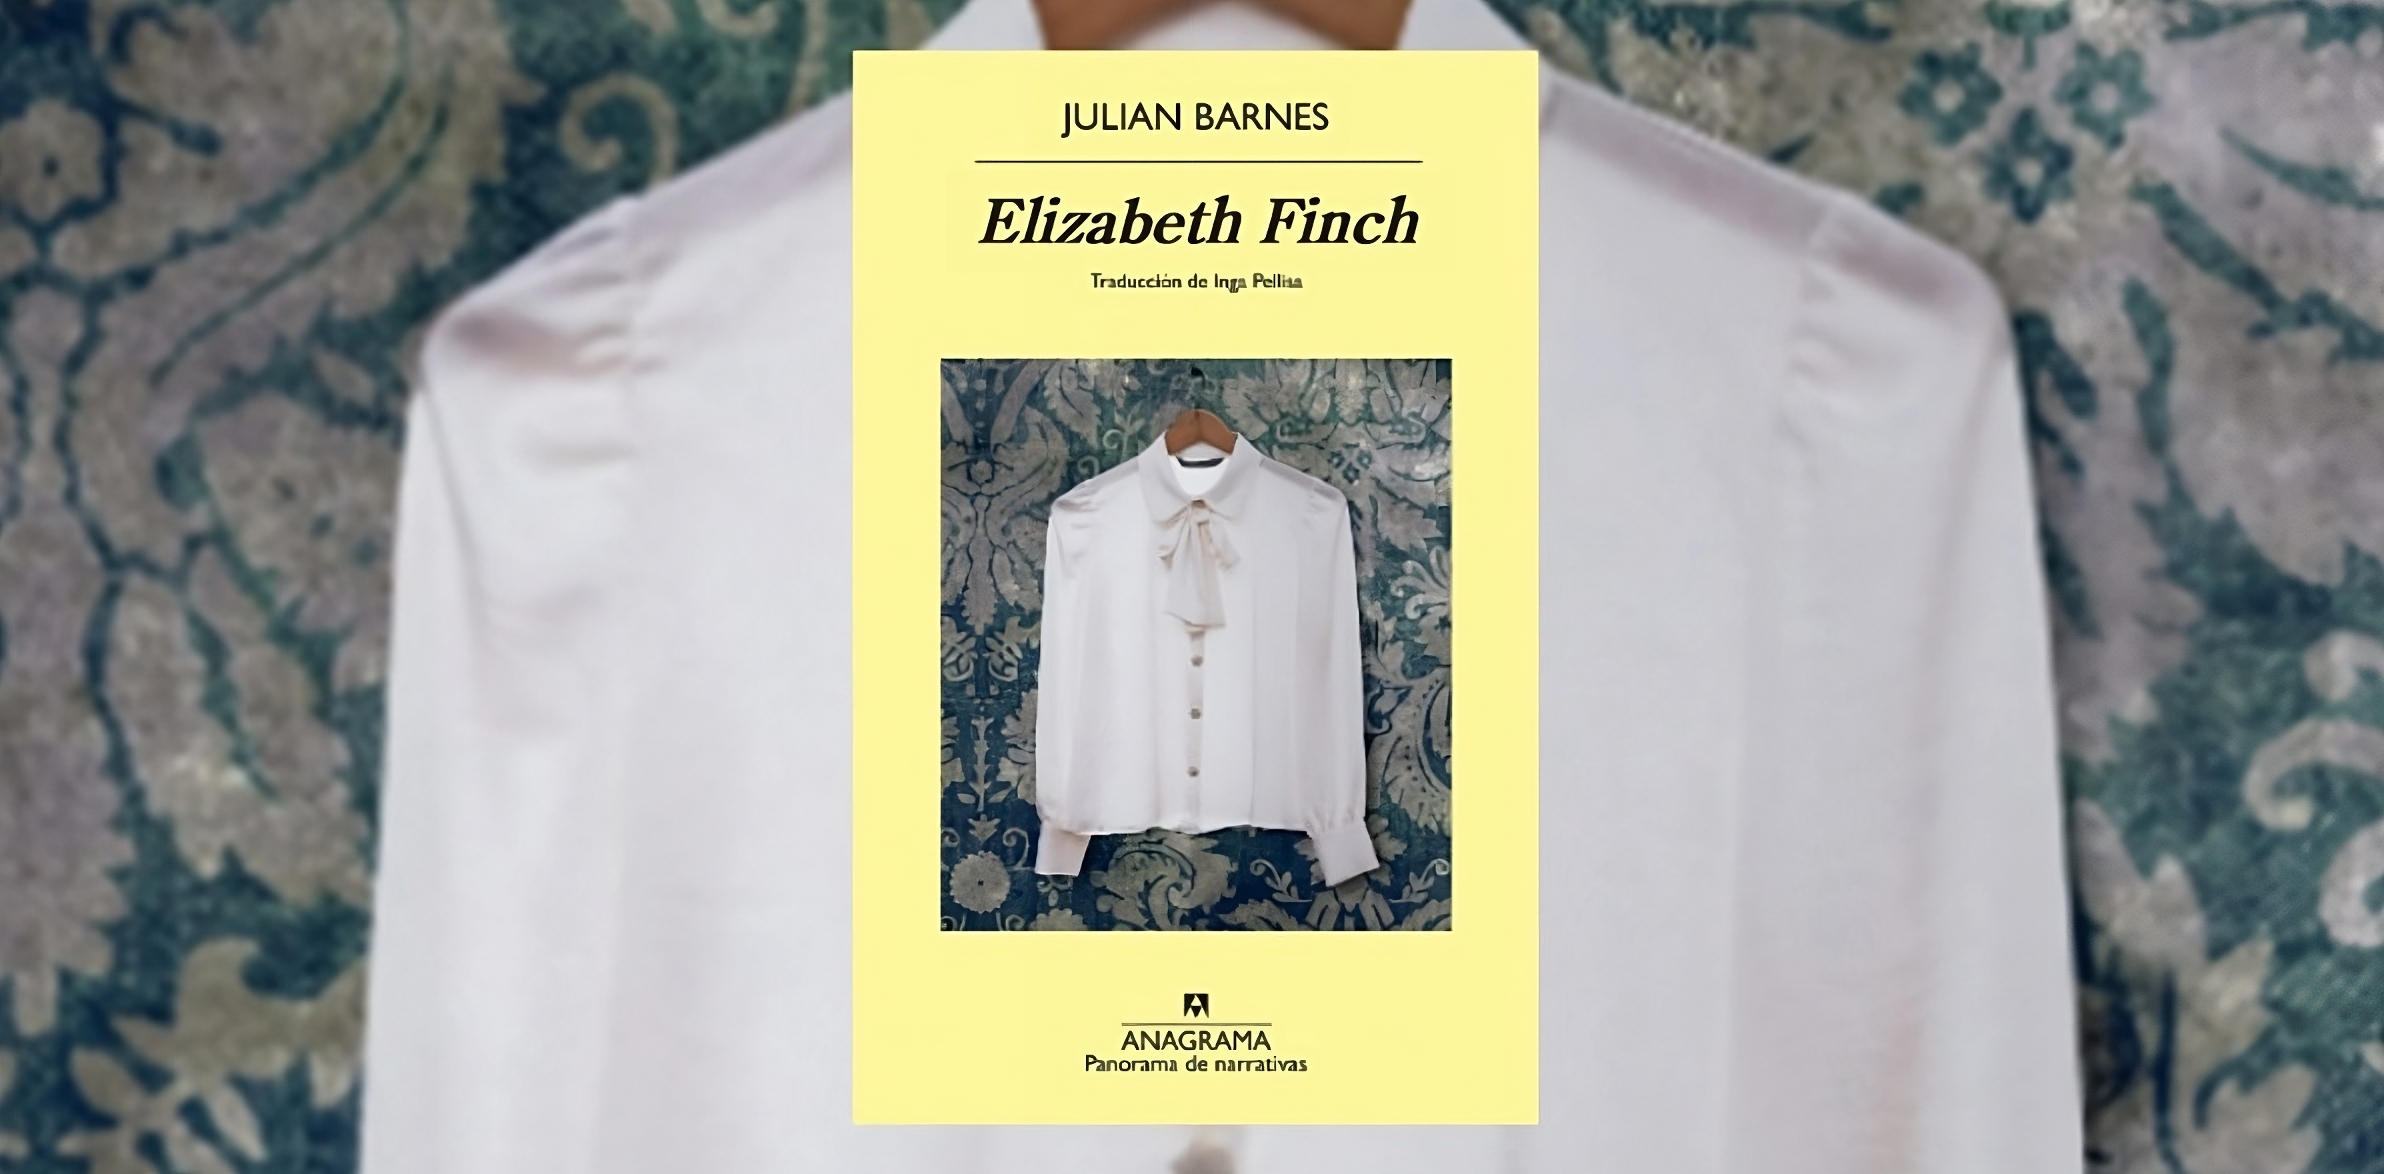 Portada del libro "Elizabeth Finch", de Julian Barnes. (Anagrama).